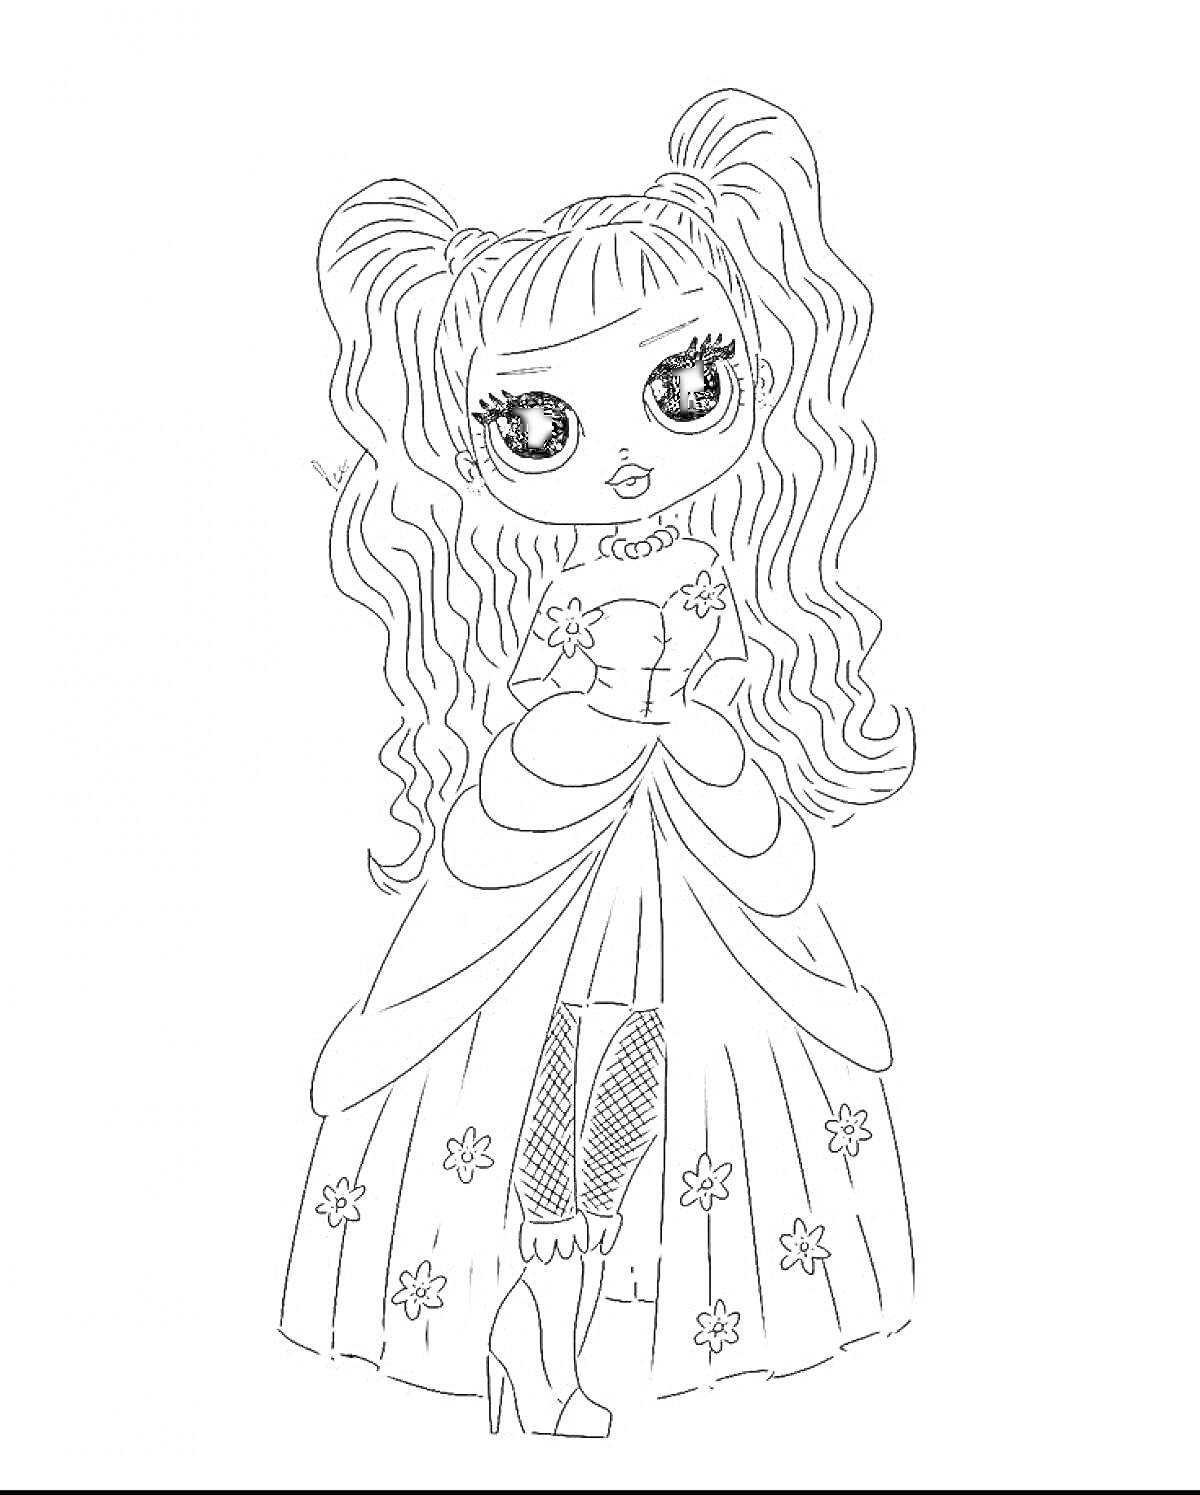 персонаж L.O.L. OMG, девушка с длинными волнистыми волосами, в платье с цветочным узором, на высоких каблуках и в колготках в сеточку